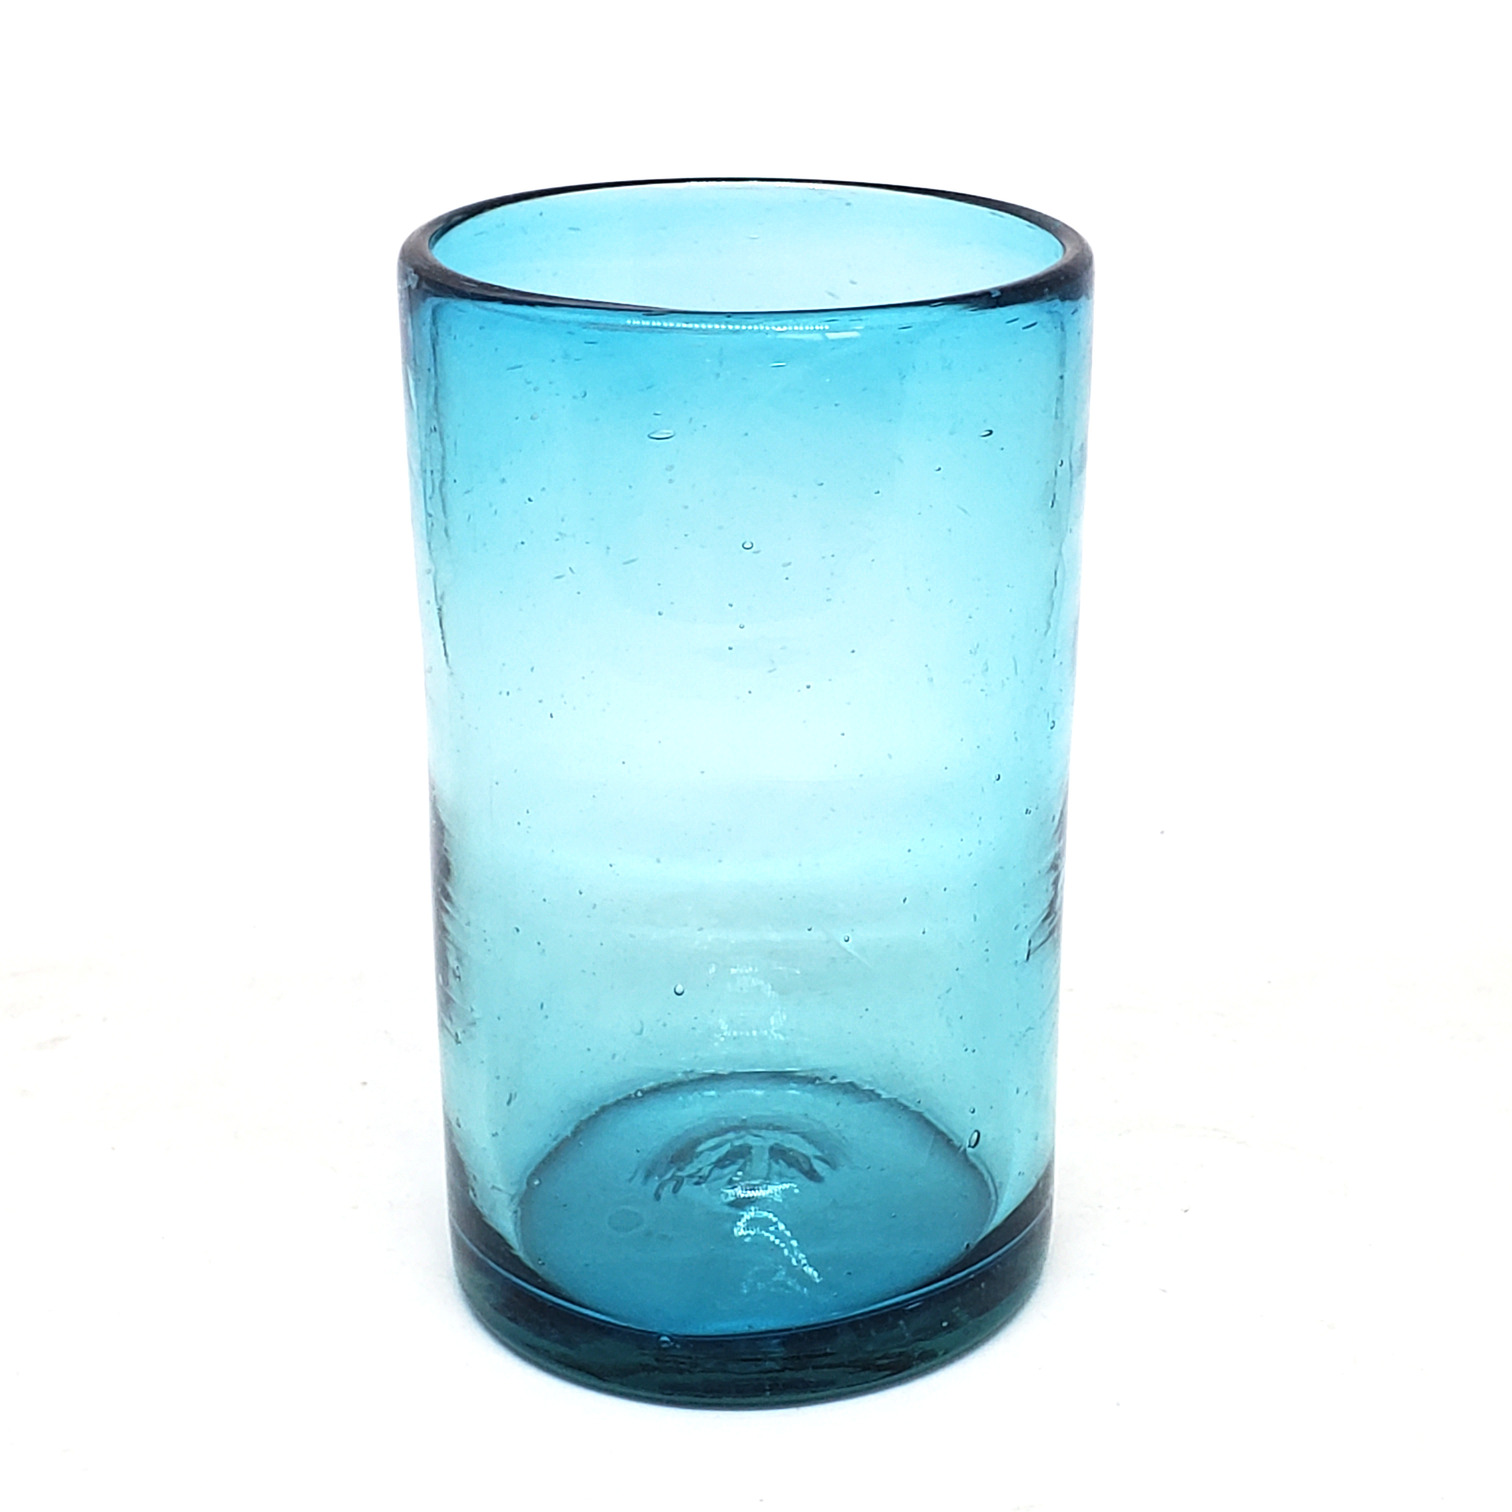 Novedades / Juego de 6 vasos grandes color azul aqua / �stos artesanales vasos le dar�n un toque cl�sico a su bebida favorita.